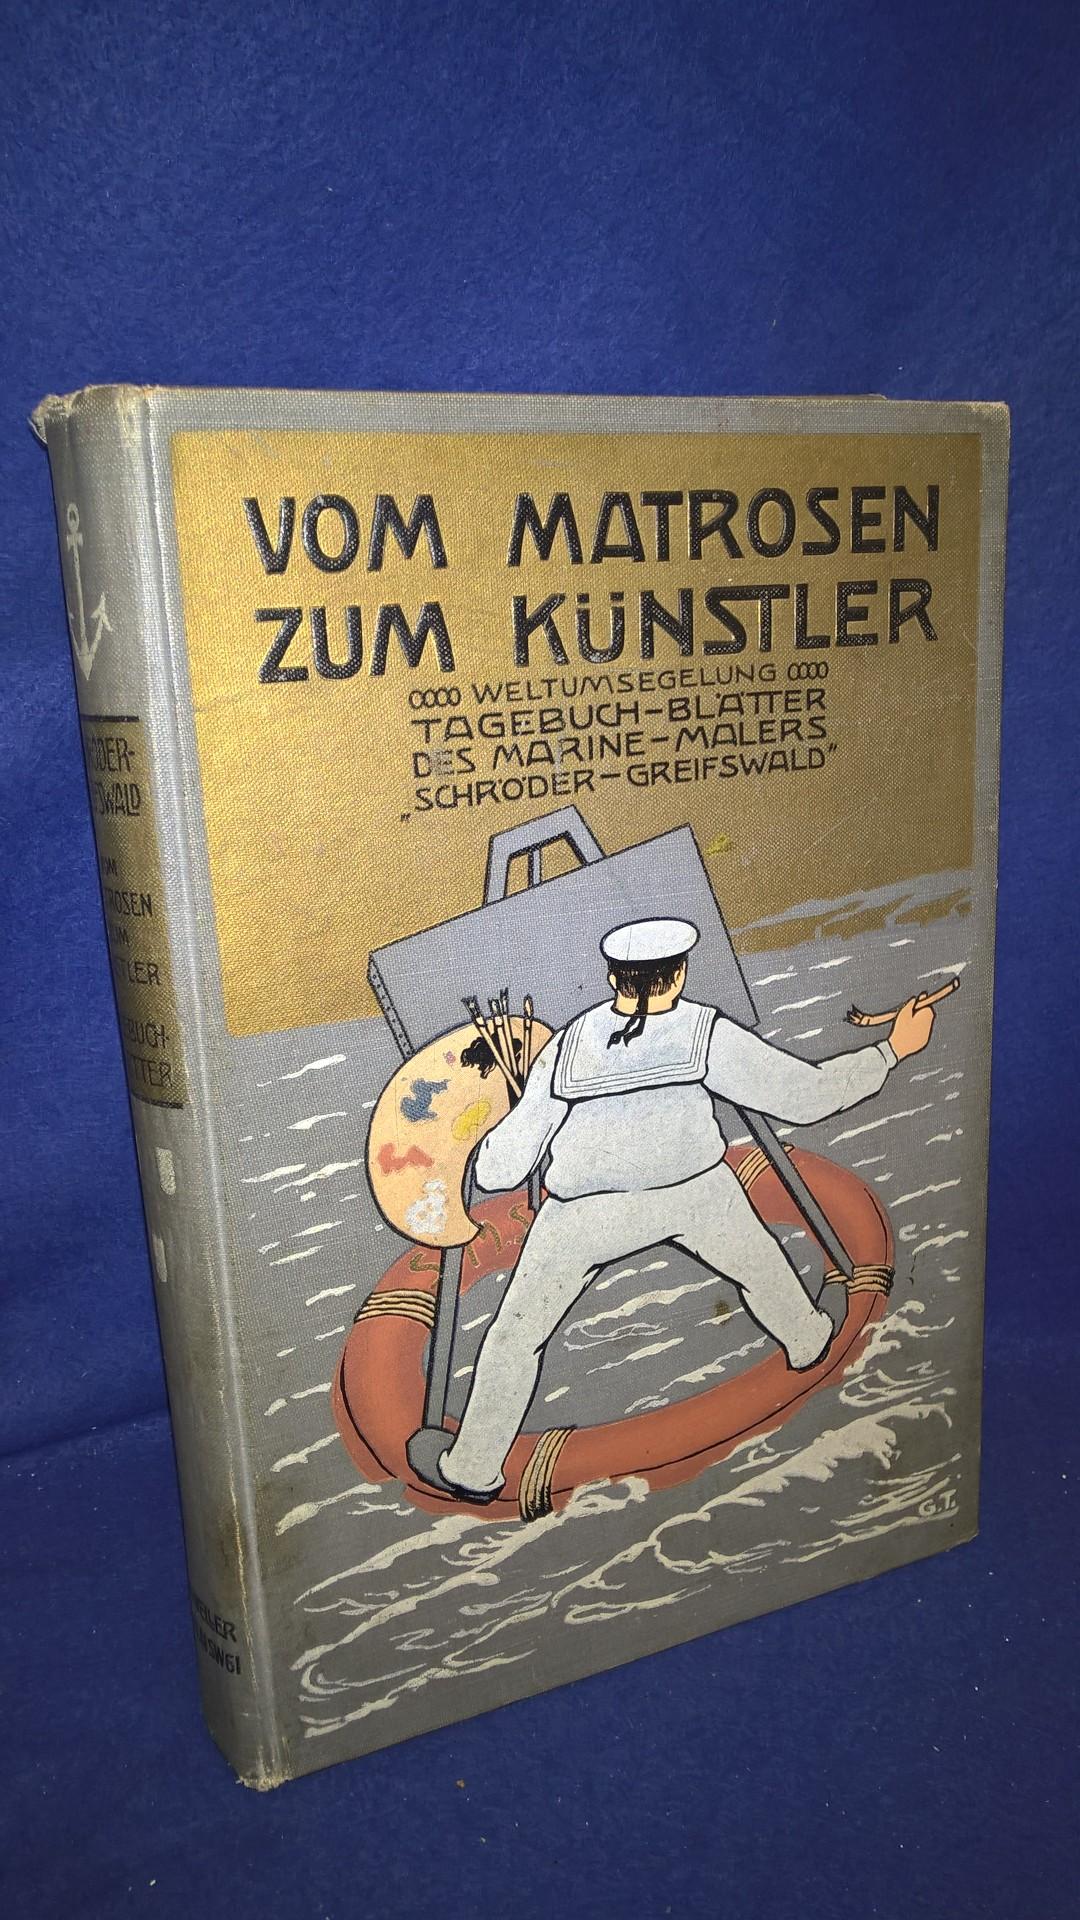 Vom Matrosen zum Künstler - Tagebuch-Blätter des Marinemalers Schröder-Greifswald